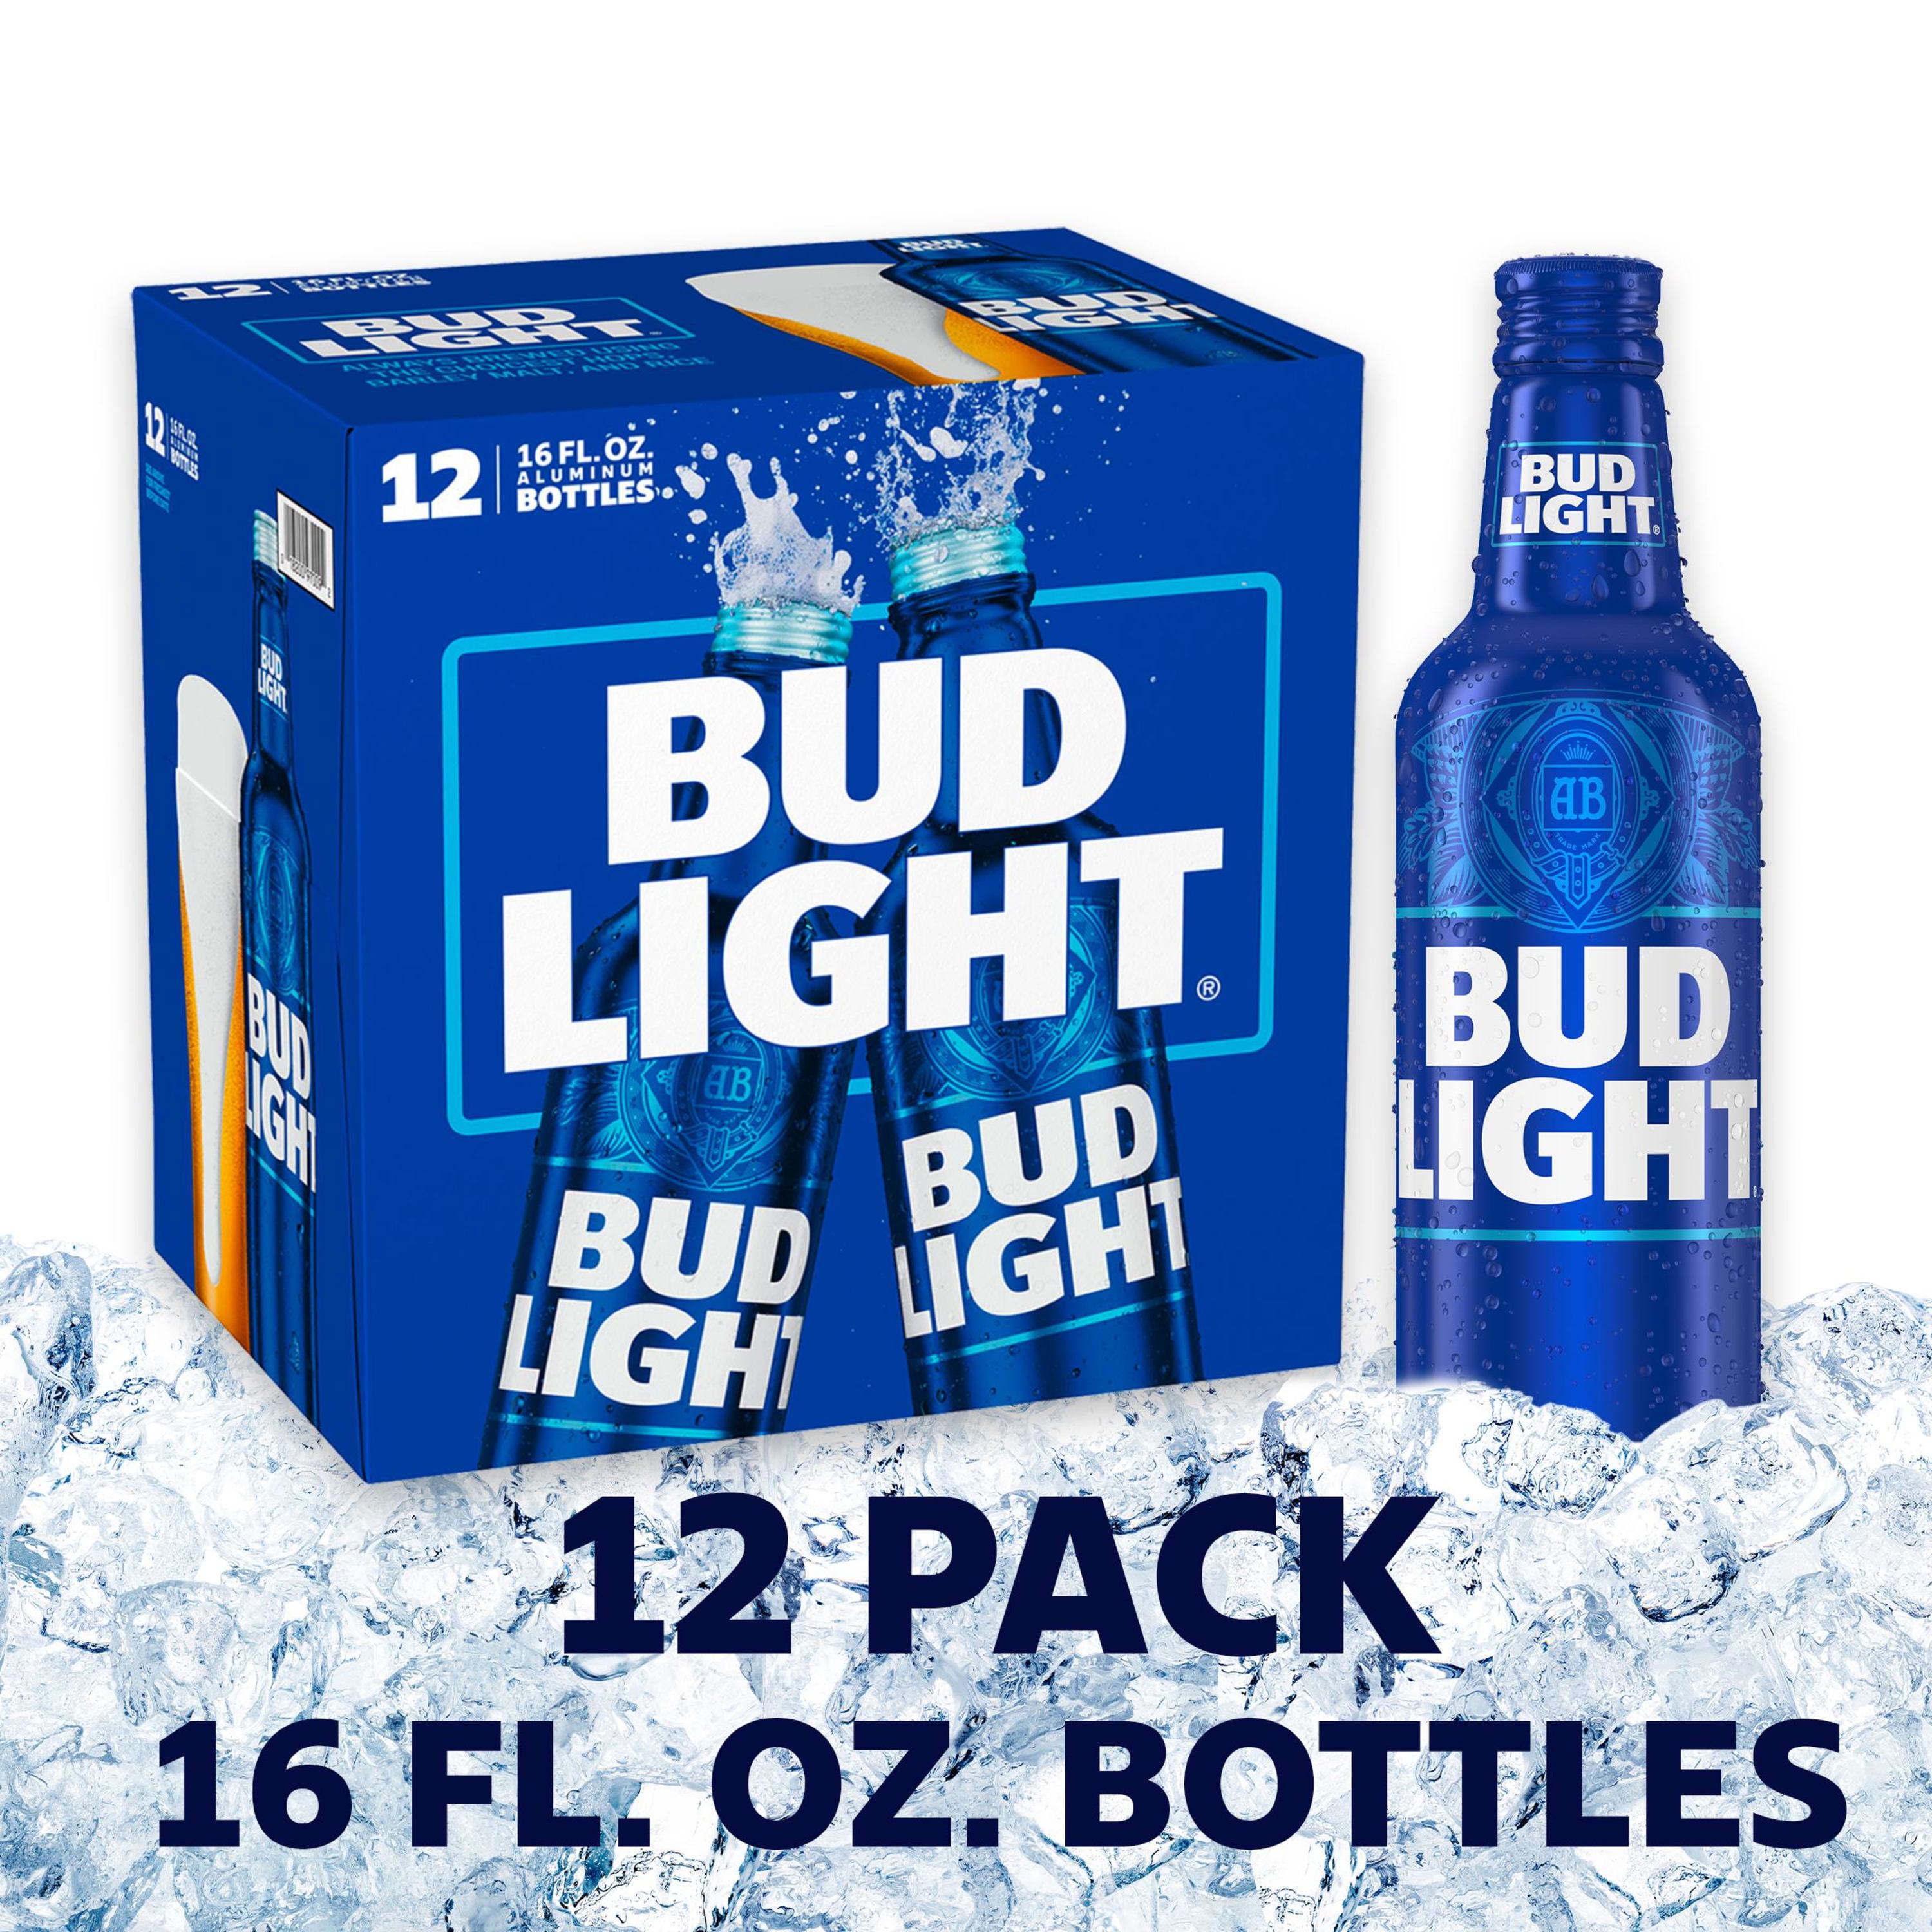 Bud Light Beer, 12 Pack Beer, 16 FL OZ Bottles